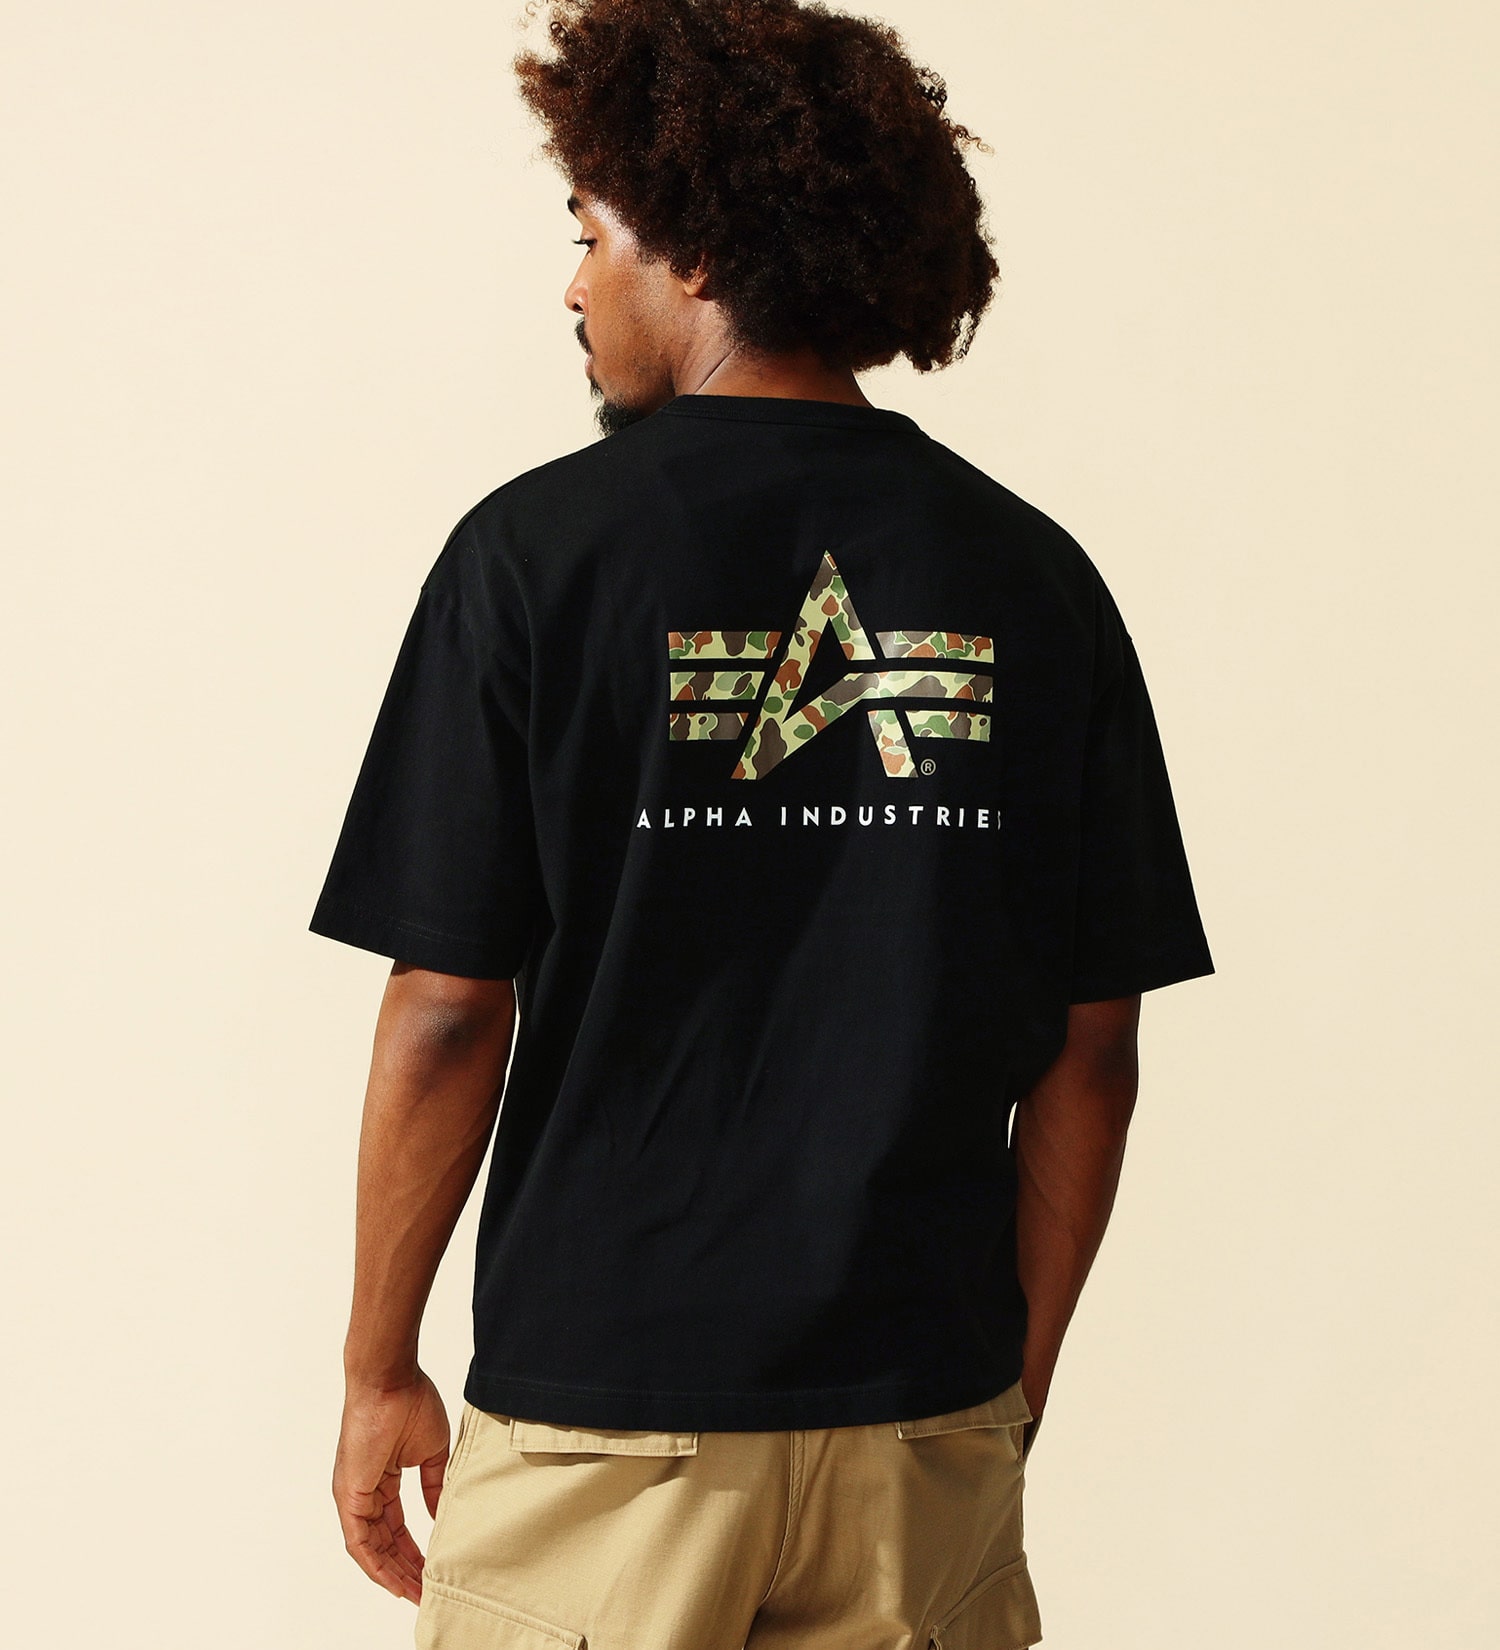 ALPHA(アルファ)のユーティリティーポケットTシャツ (カモ) 半袖|トップス/Tシャツ/カットソー/メンズ|ブラック